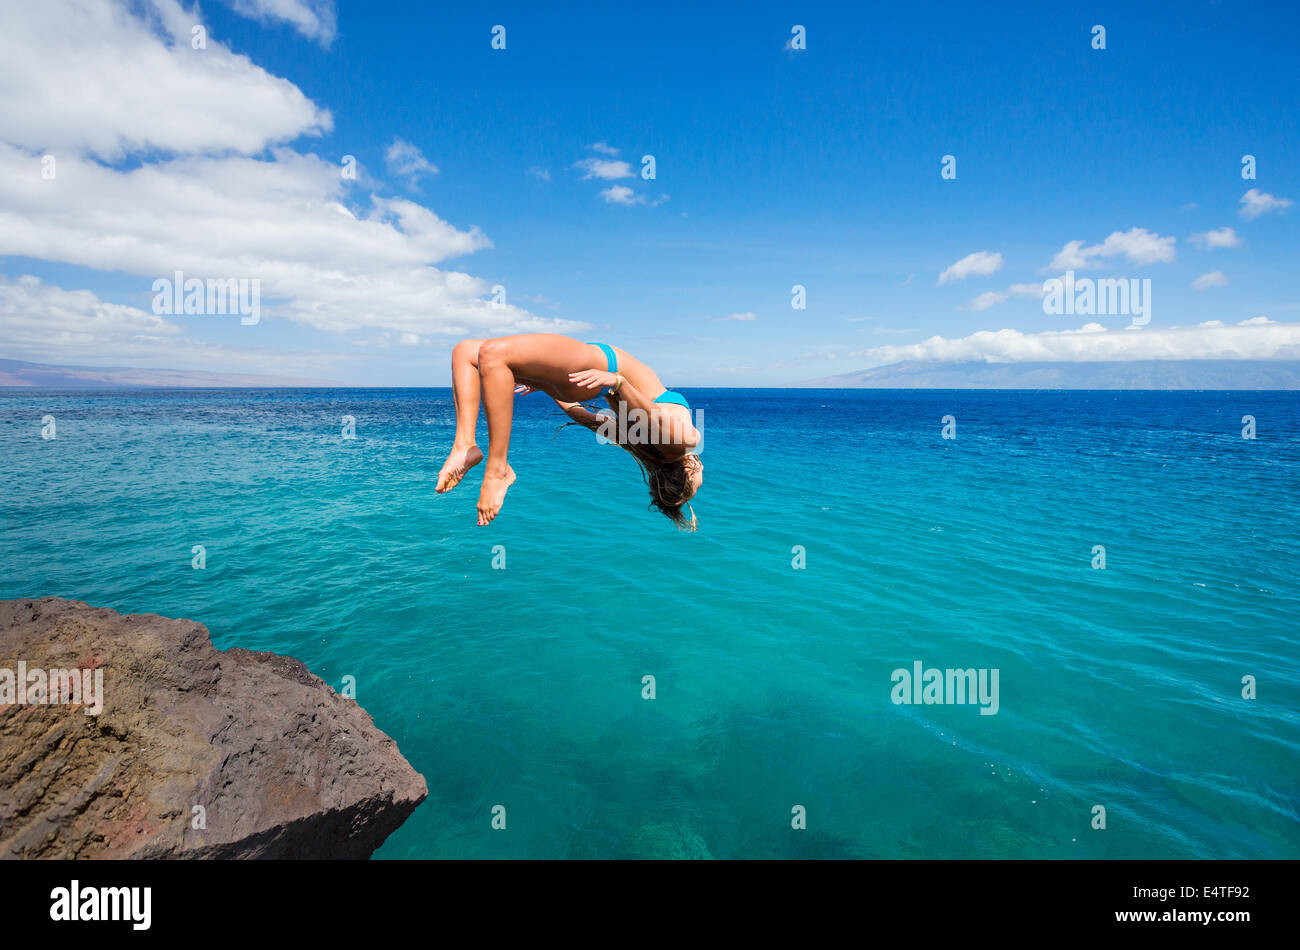 Woman doing backflip off cliff dans l'océan. Vie d'été. Banque D'Images